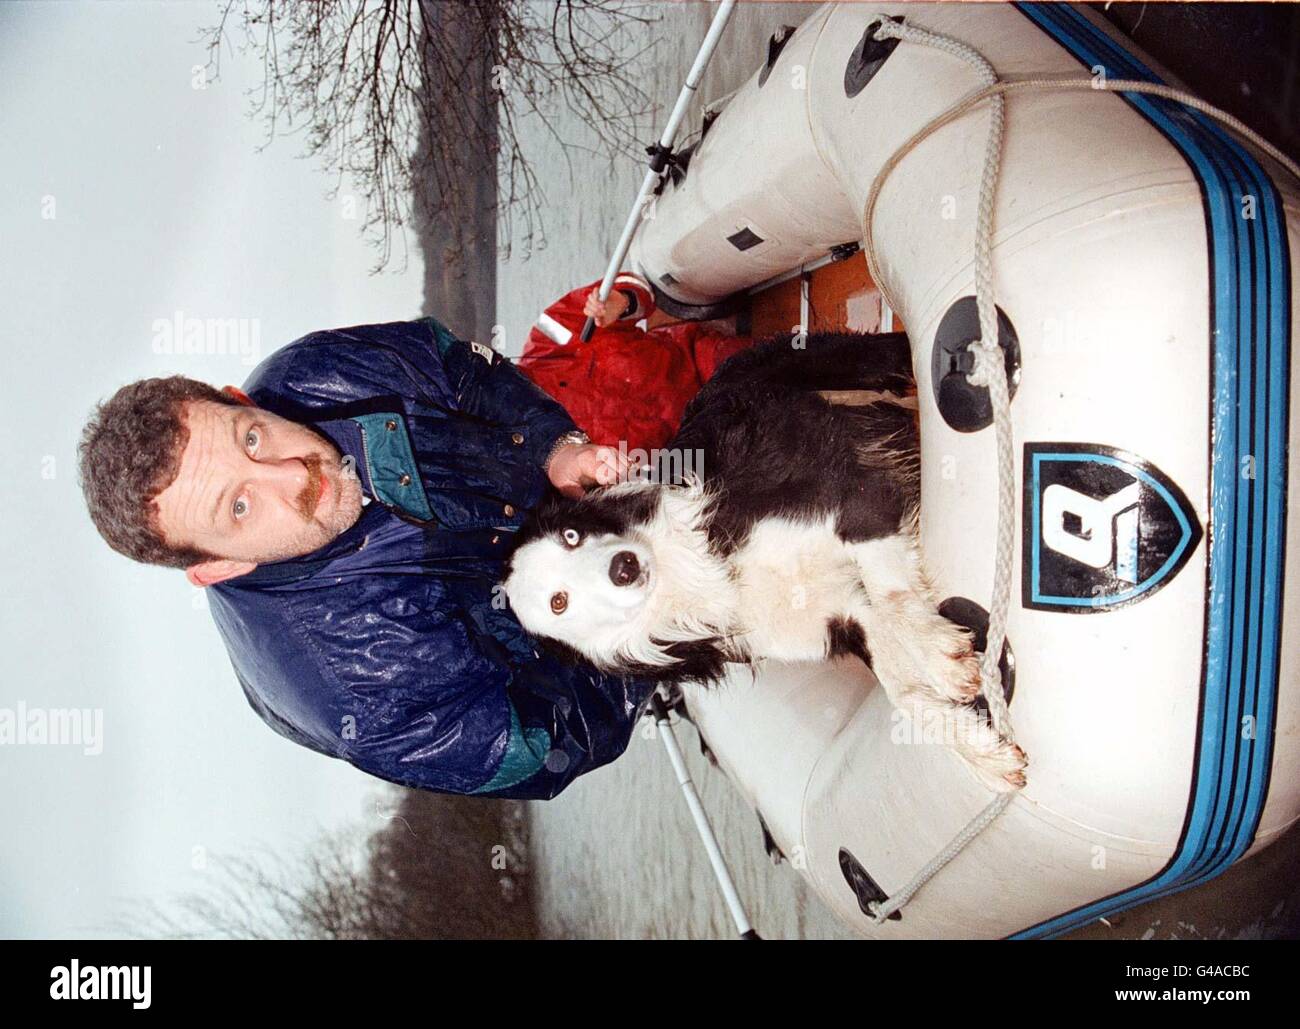 Lancashire Police Hundeführer Mike schwindet, mit "Lee" ein Polizeihund, der darauf spezialisiert ist, Körper unter Wasser zu schnüffeln. Sie sind auf den Falklands, um bei einer Morduntersuchung zu helfen. Siehe PA Story POLICE Dog. Foto von Dave Kendall/PA. Stockfoto